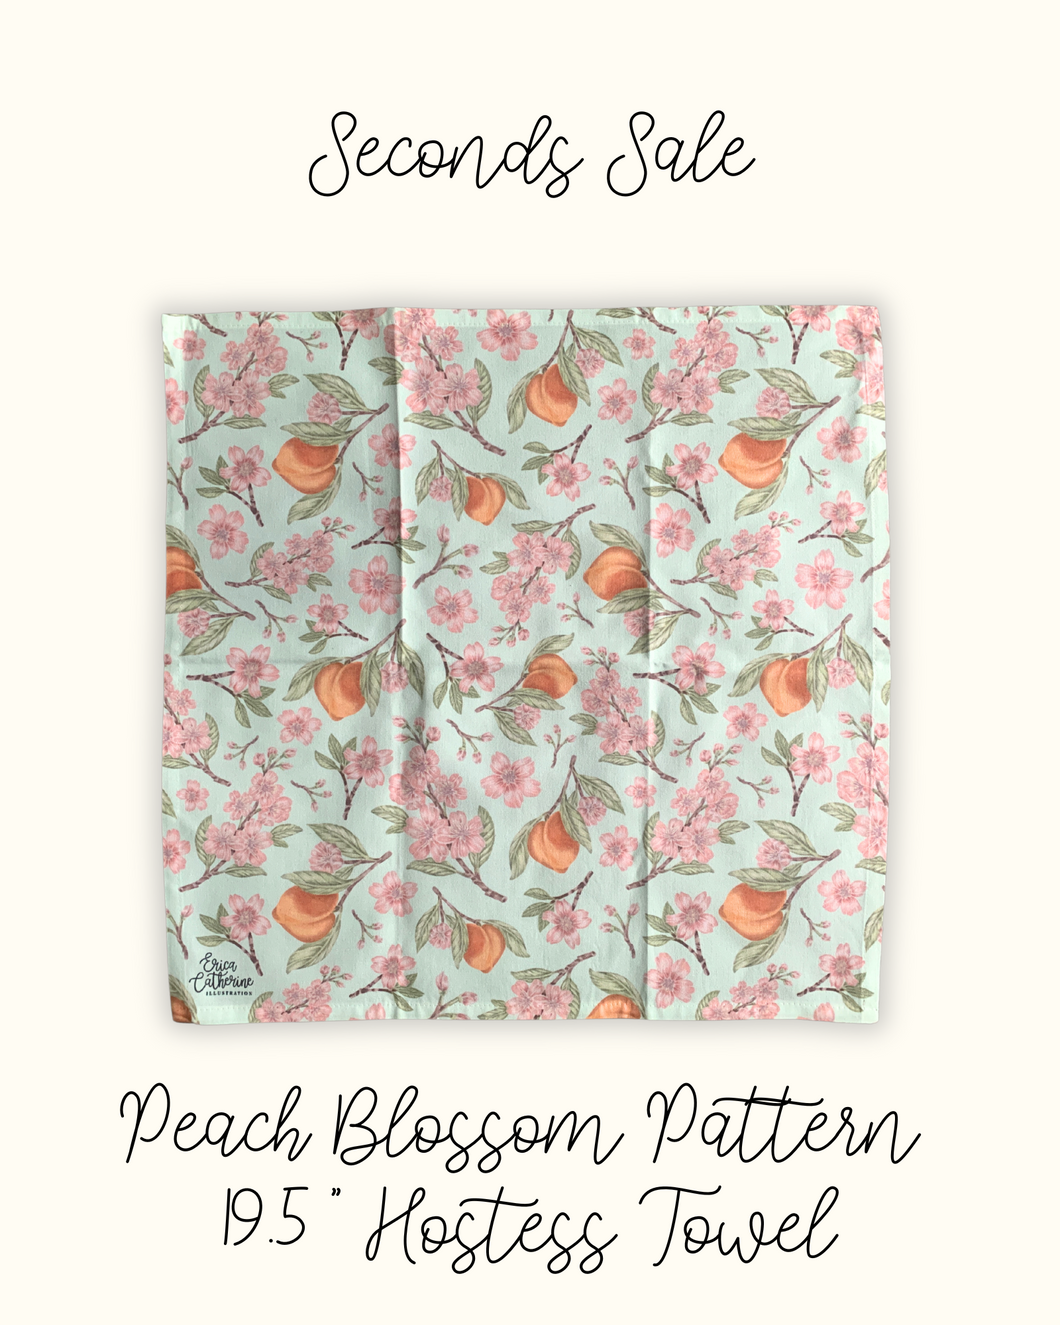 Peach Blossom Hostess Towel - Seconds Sale